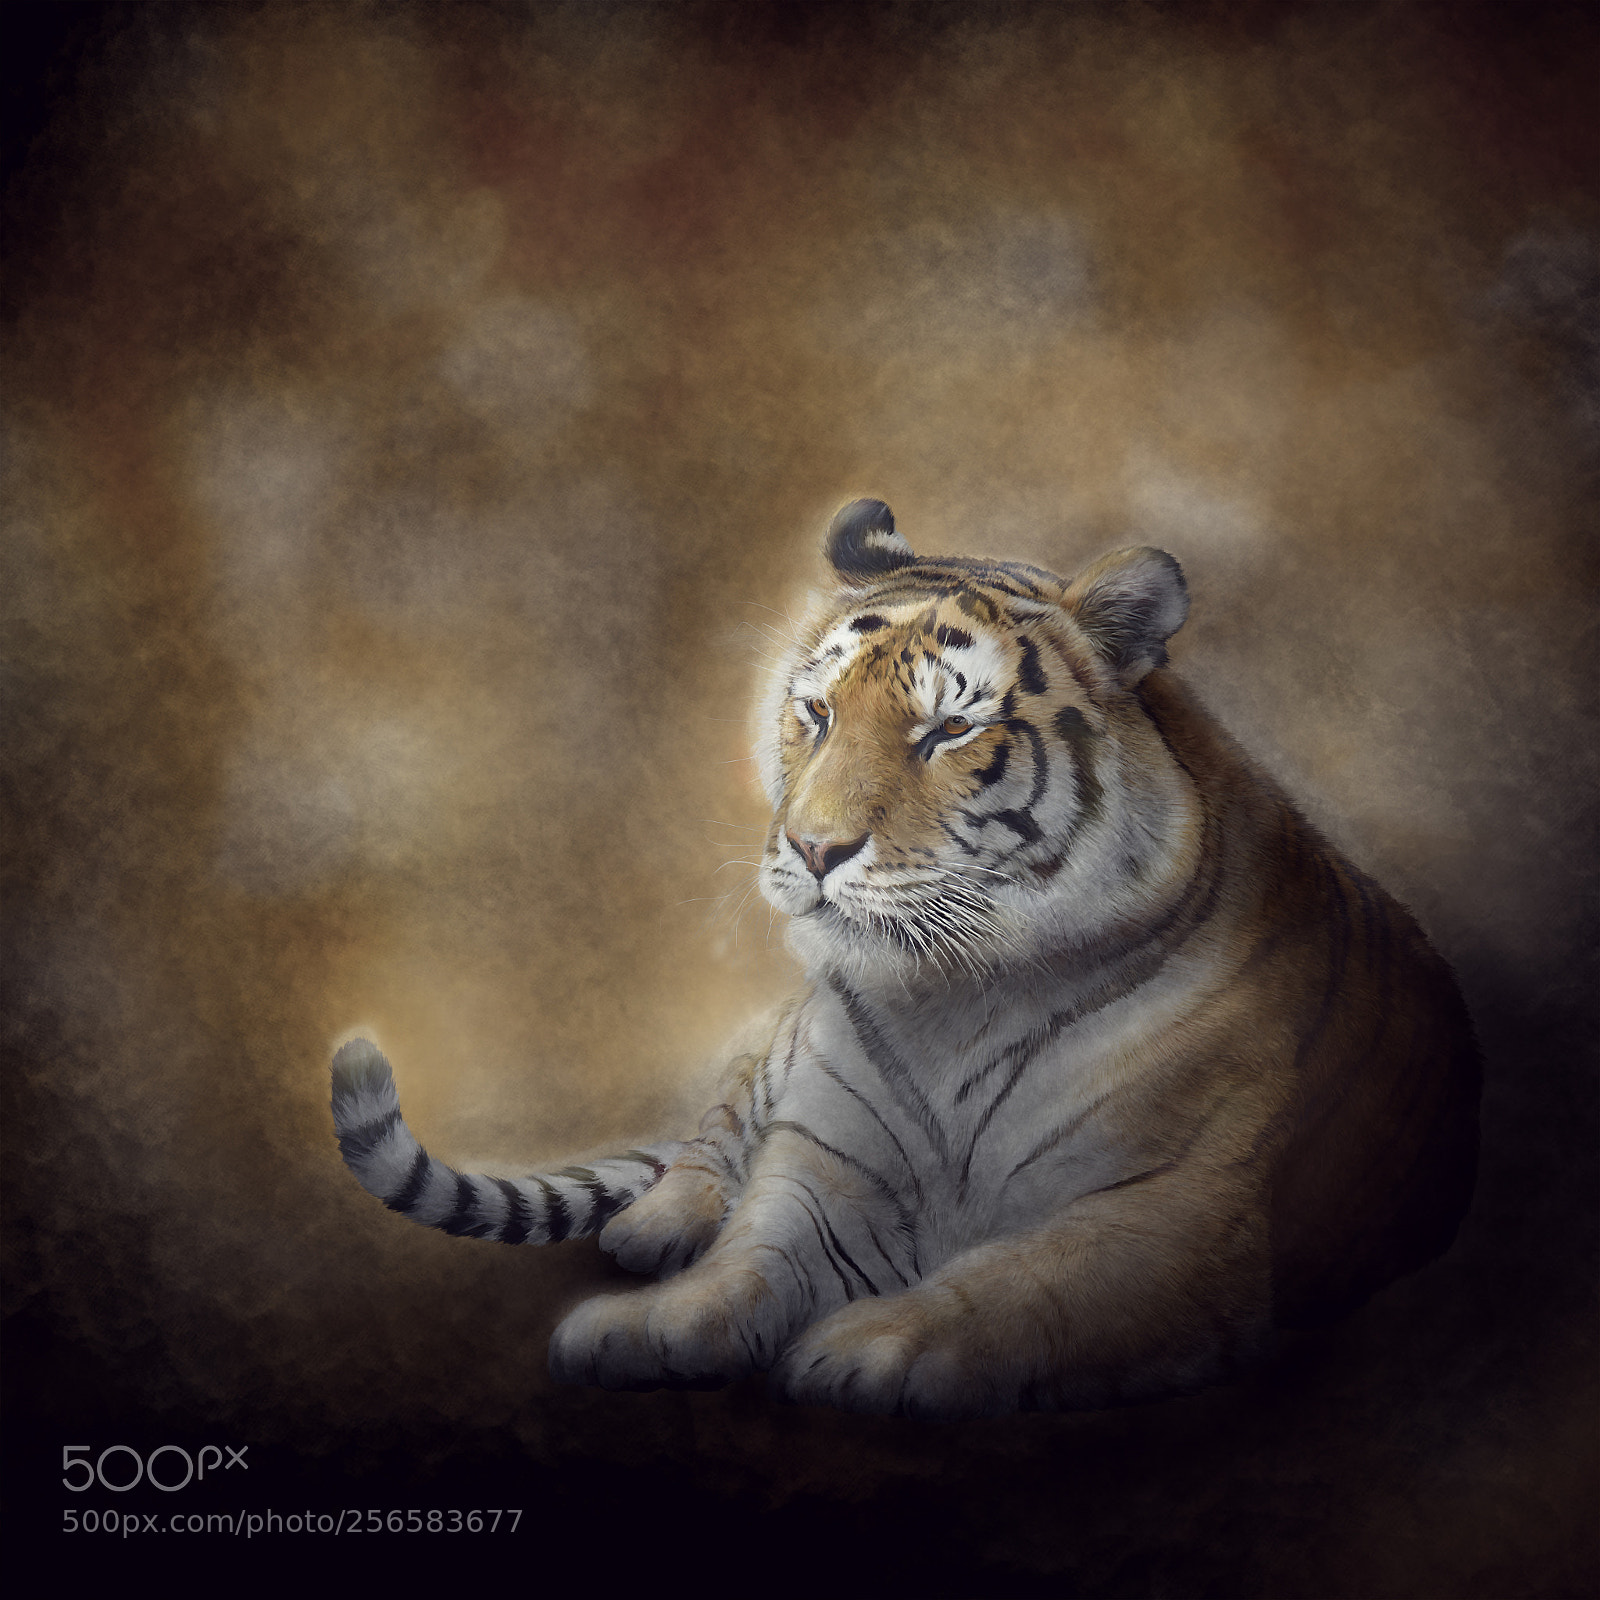 Nikon D800 sample photo. Bengal tiger resting photography